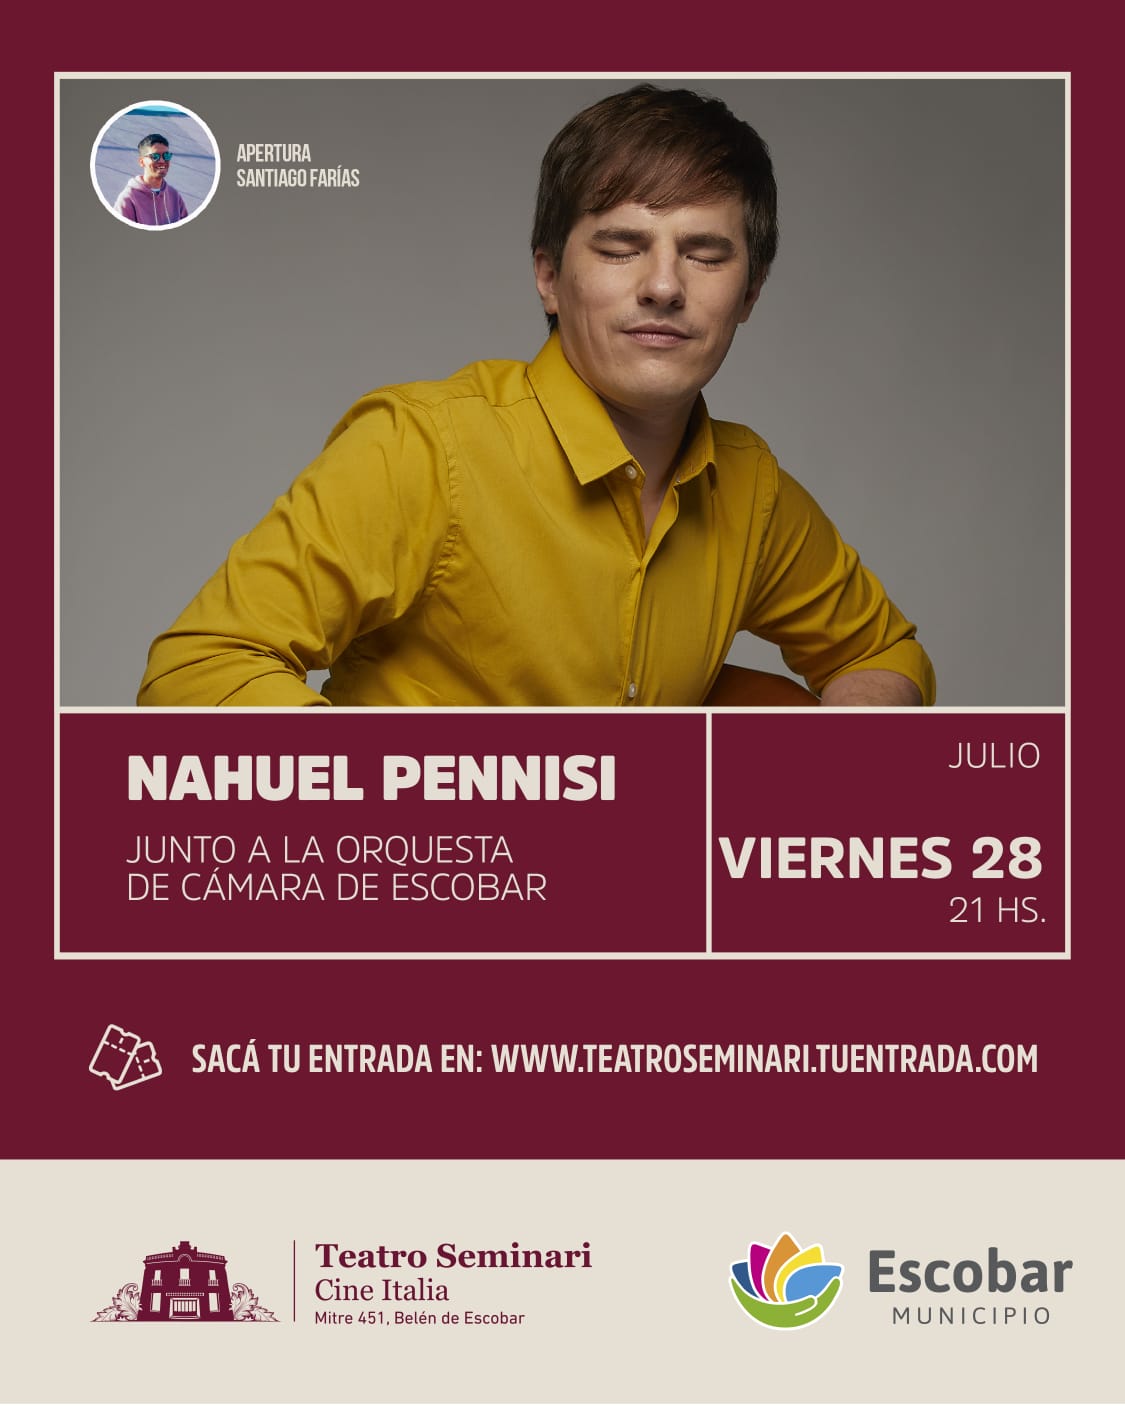 Nahuel Pennisi se presentará en el Teatro Seminari junto a la Orquesta de Cámara de Escobar